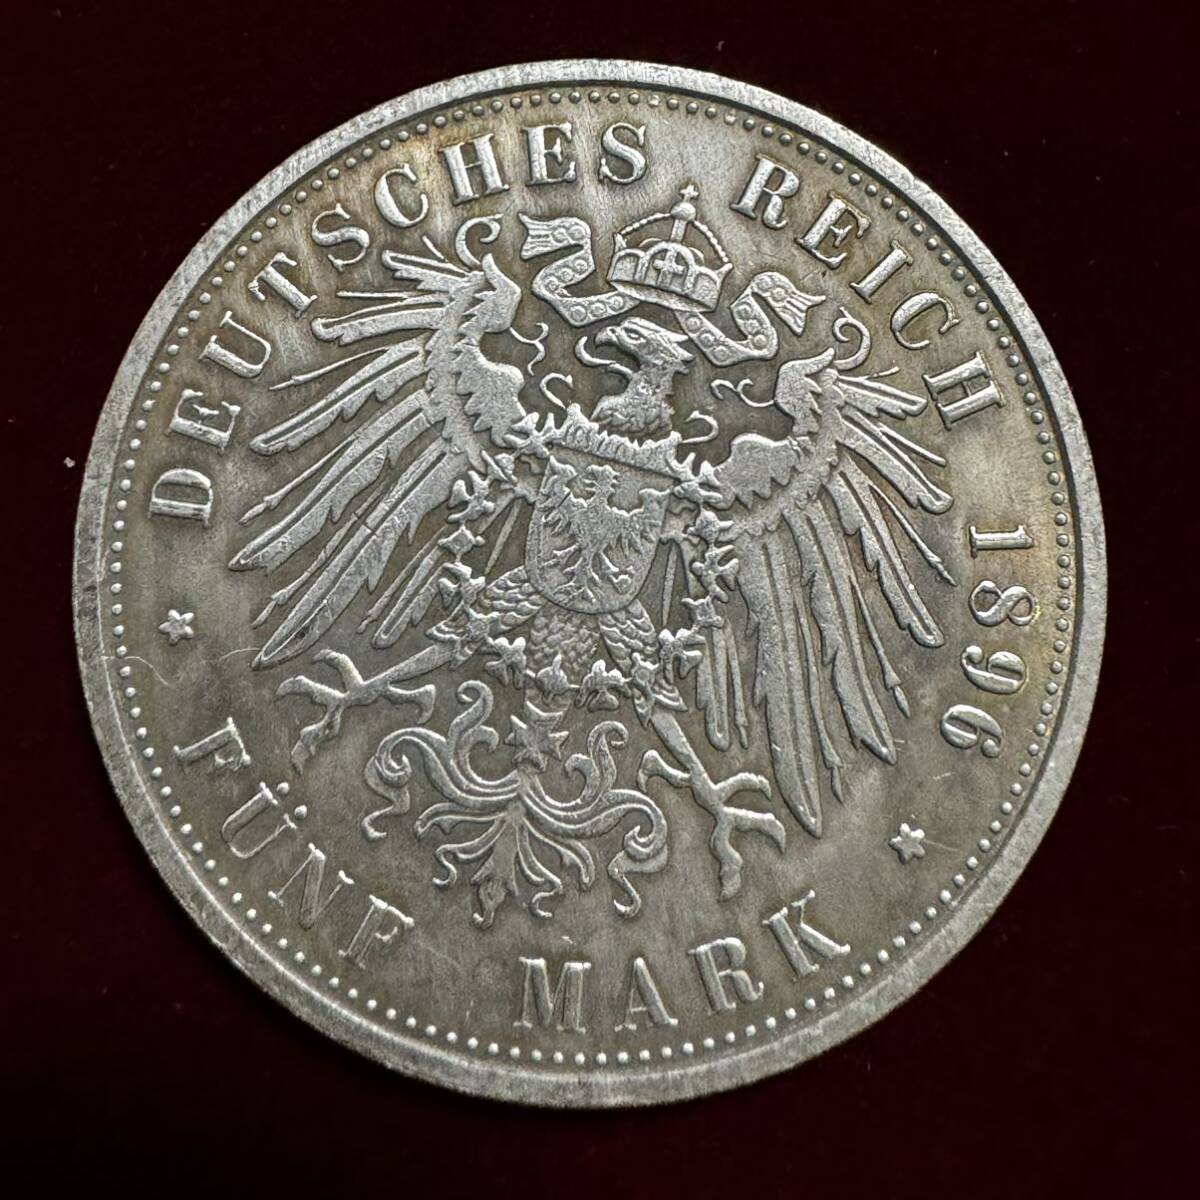 ドイツ 硬貨 古銭 ハンブルク州 1896年 ハンブルク州紋章 キャット・キャッスル マルク 国章 双頭の鷲 コイン 銀貨 外国古銭 海外硬貨 の画像2